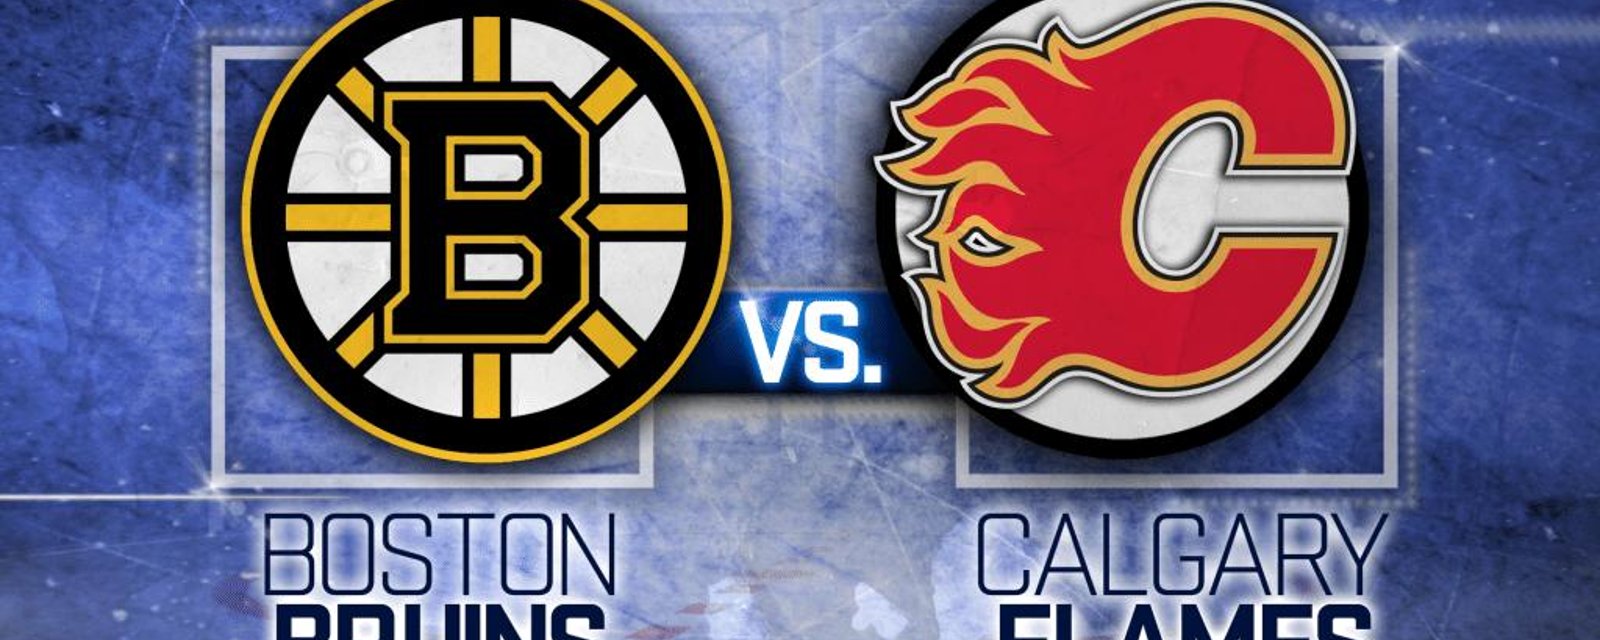 Échange entre les Bruins de Boston et les Flames de Calgary